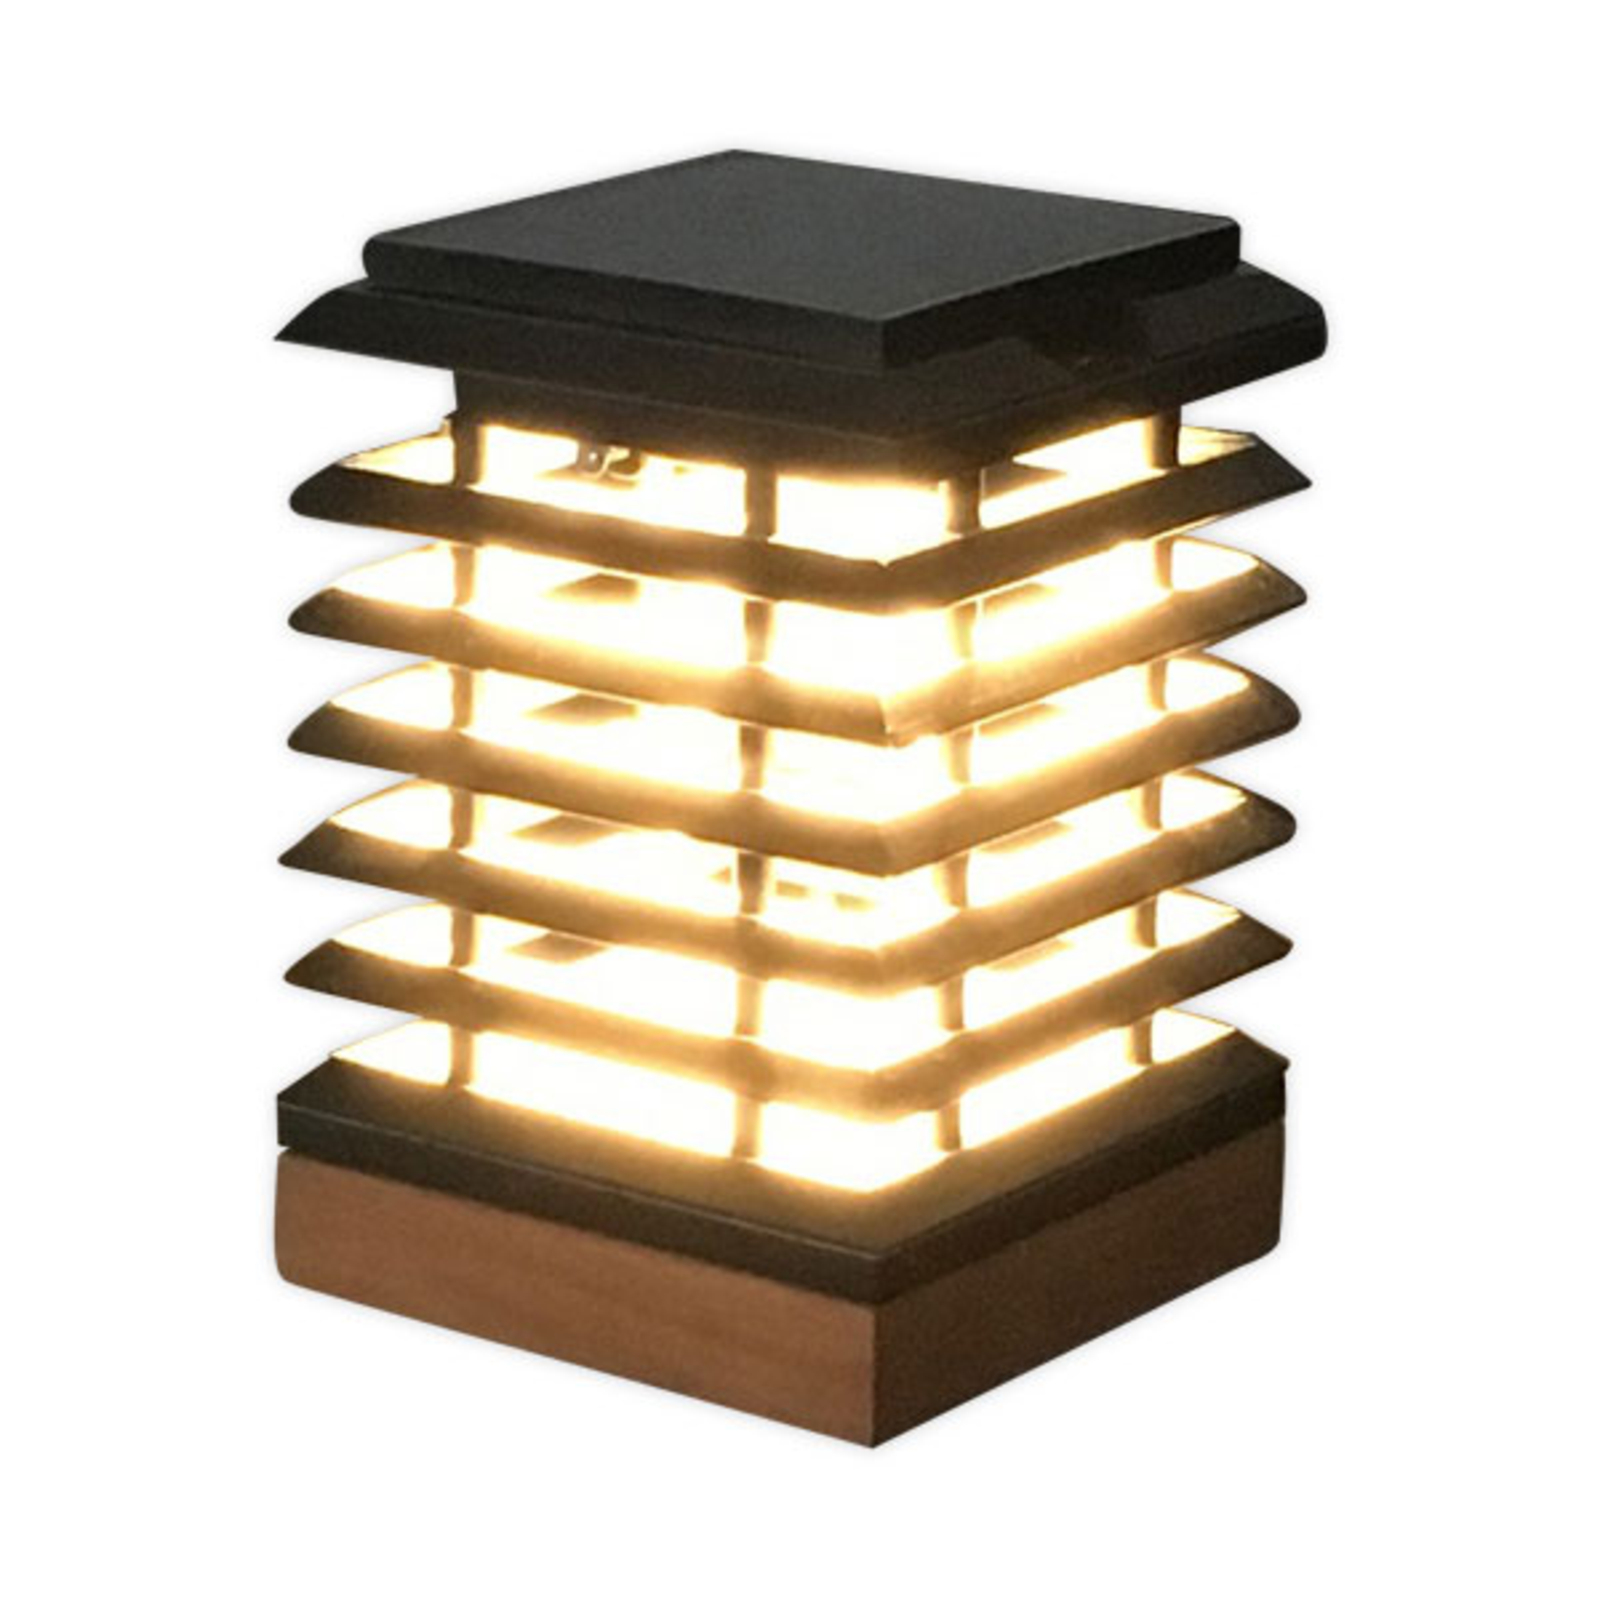 Anekdote Persoonlijk Dronken worden LED tafellamp op zonne-energie Tekura van teak | Lampen24.be